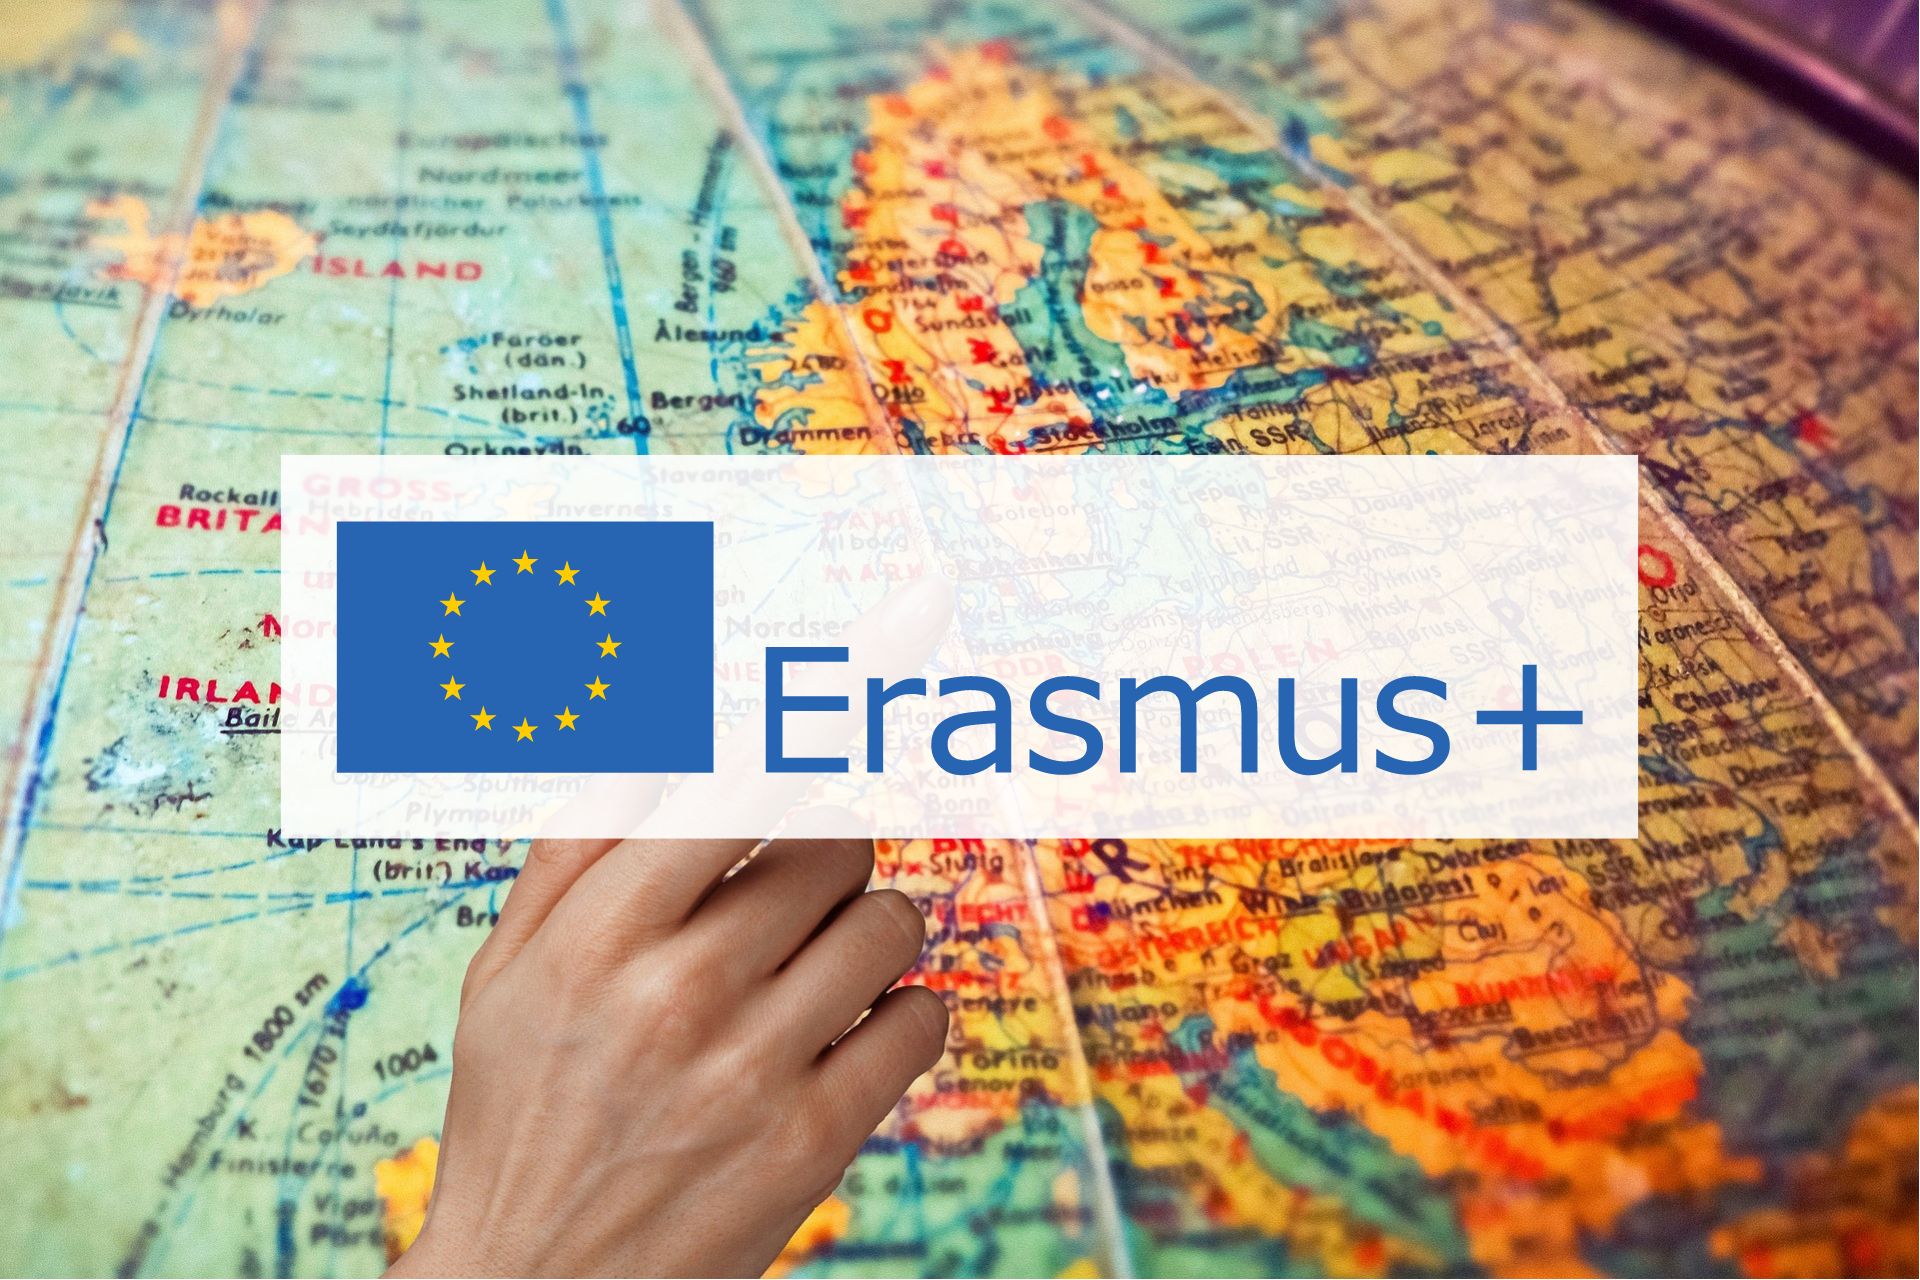 Atvērta vakance programmas Erasmus+ koordinatora palīga amatā!